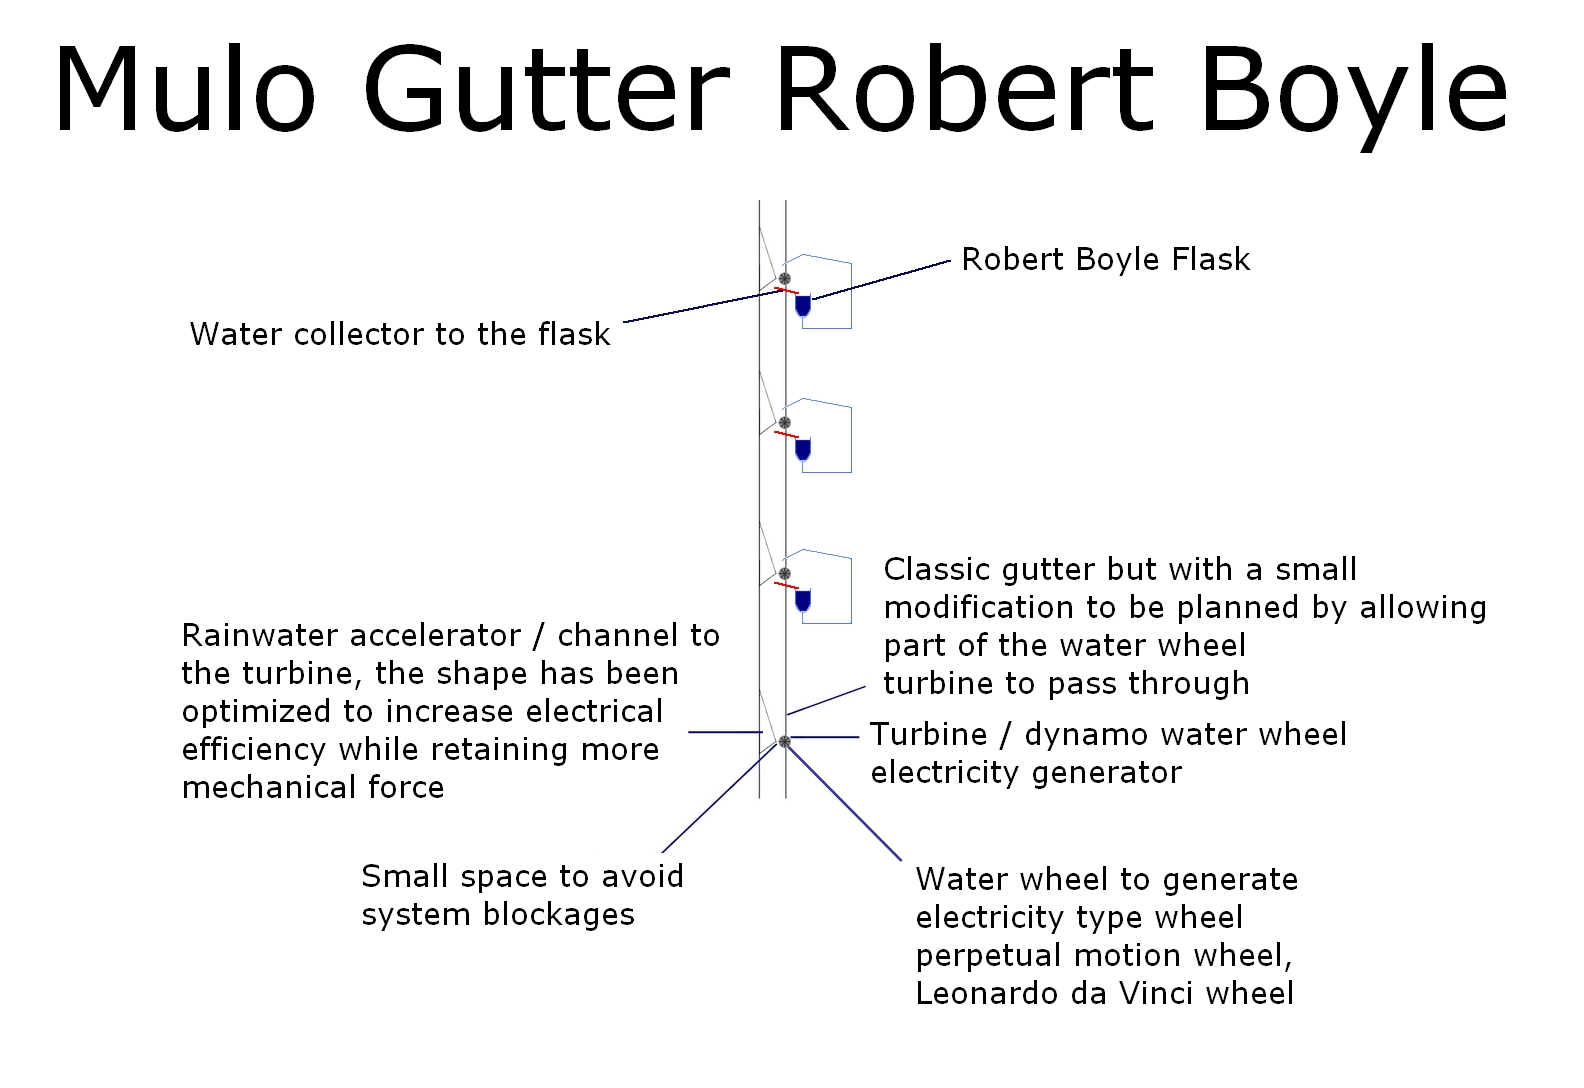 The Mulo Gutter Robert Boyle